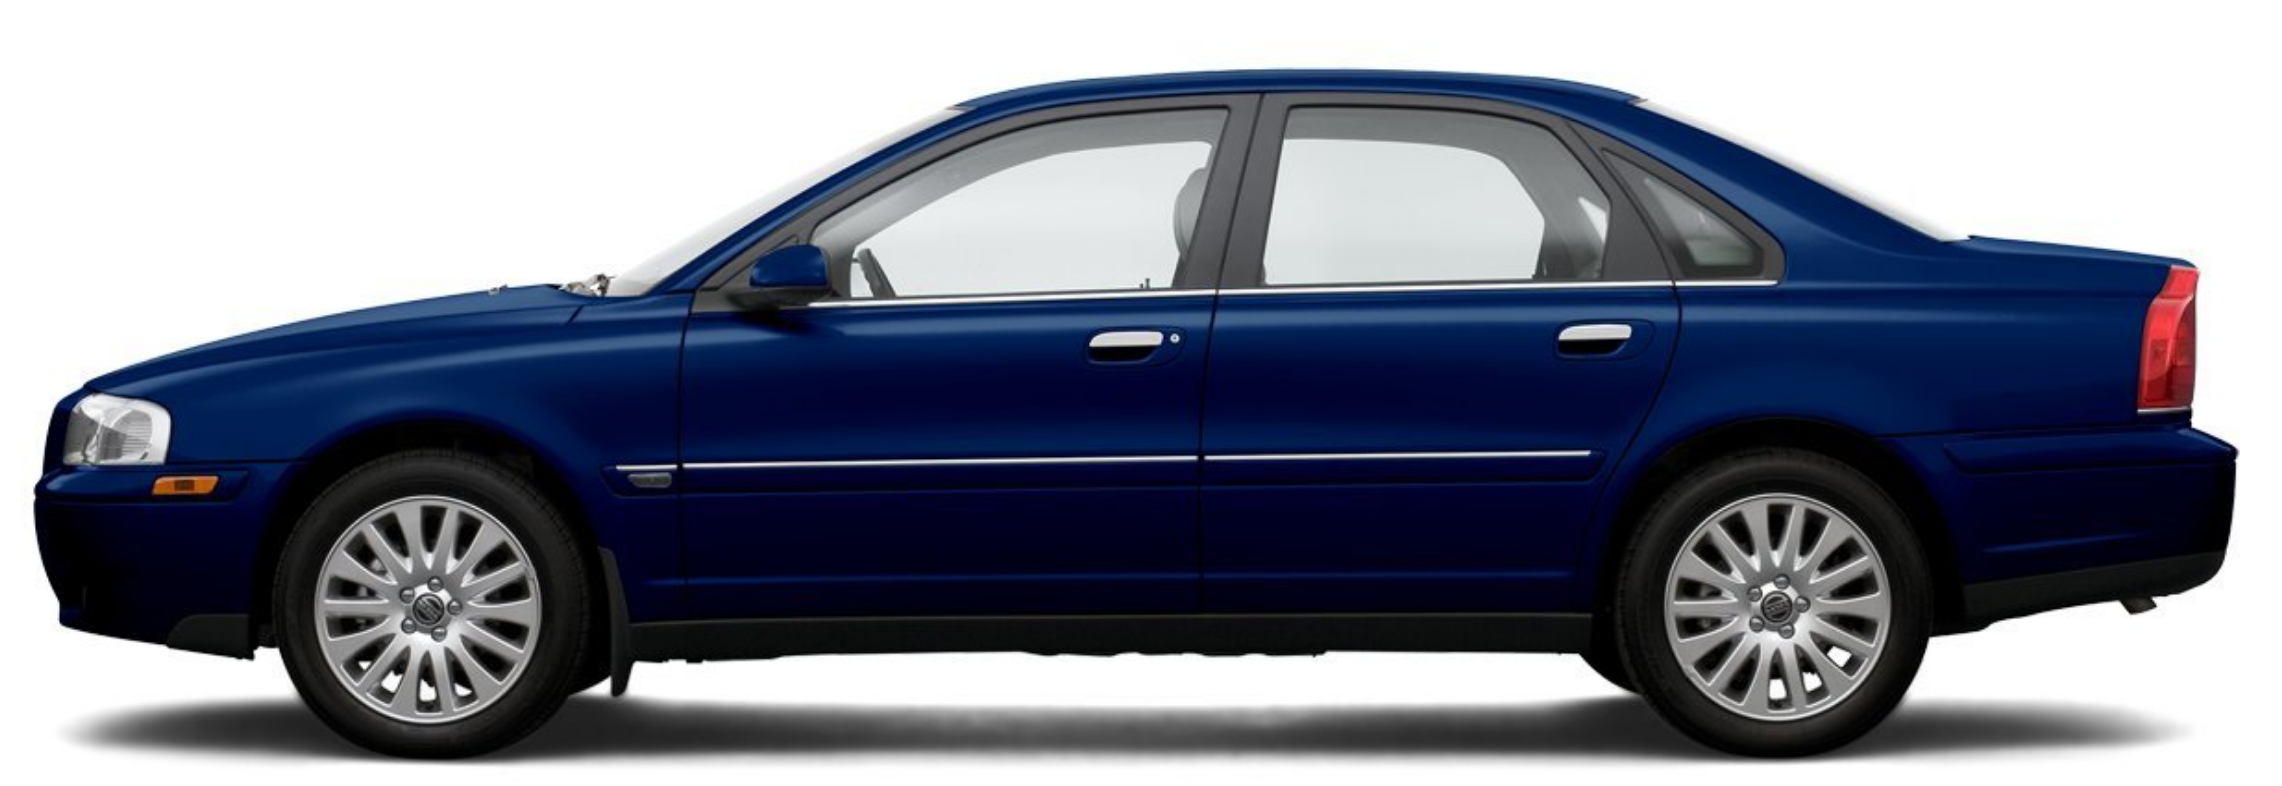 Afbeelding van 52GFHZ, blauwe Volvo S80 2.4 140 Pk Aut. sedan